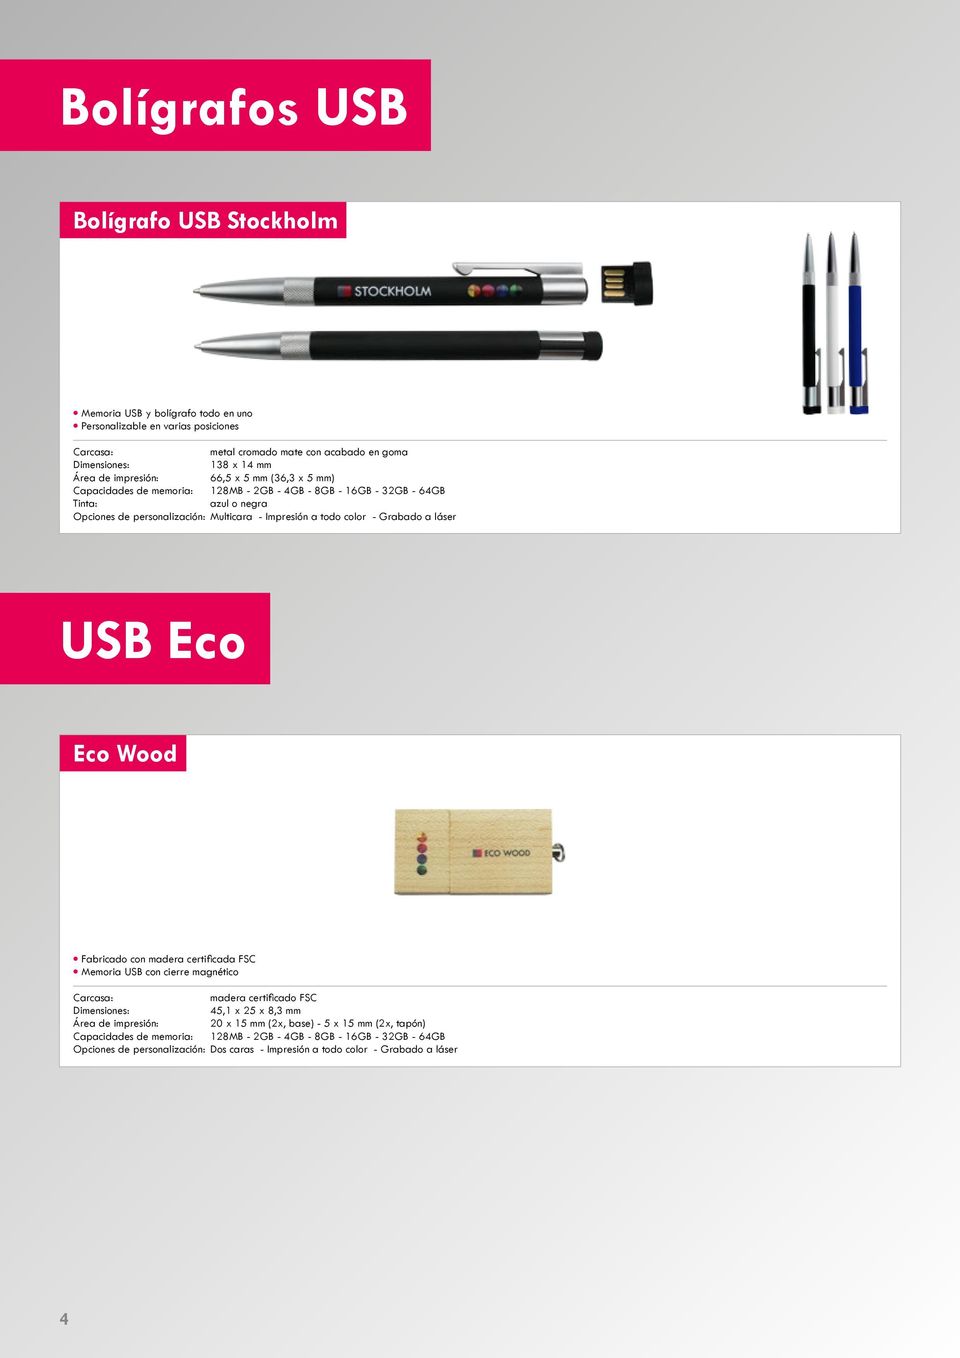 Multicara - Impresión a todo color - Grabado a láser USB Eco Eco Wood Fabricado con madera certificada FSC Memoria USB con cierre